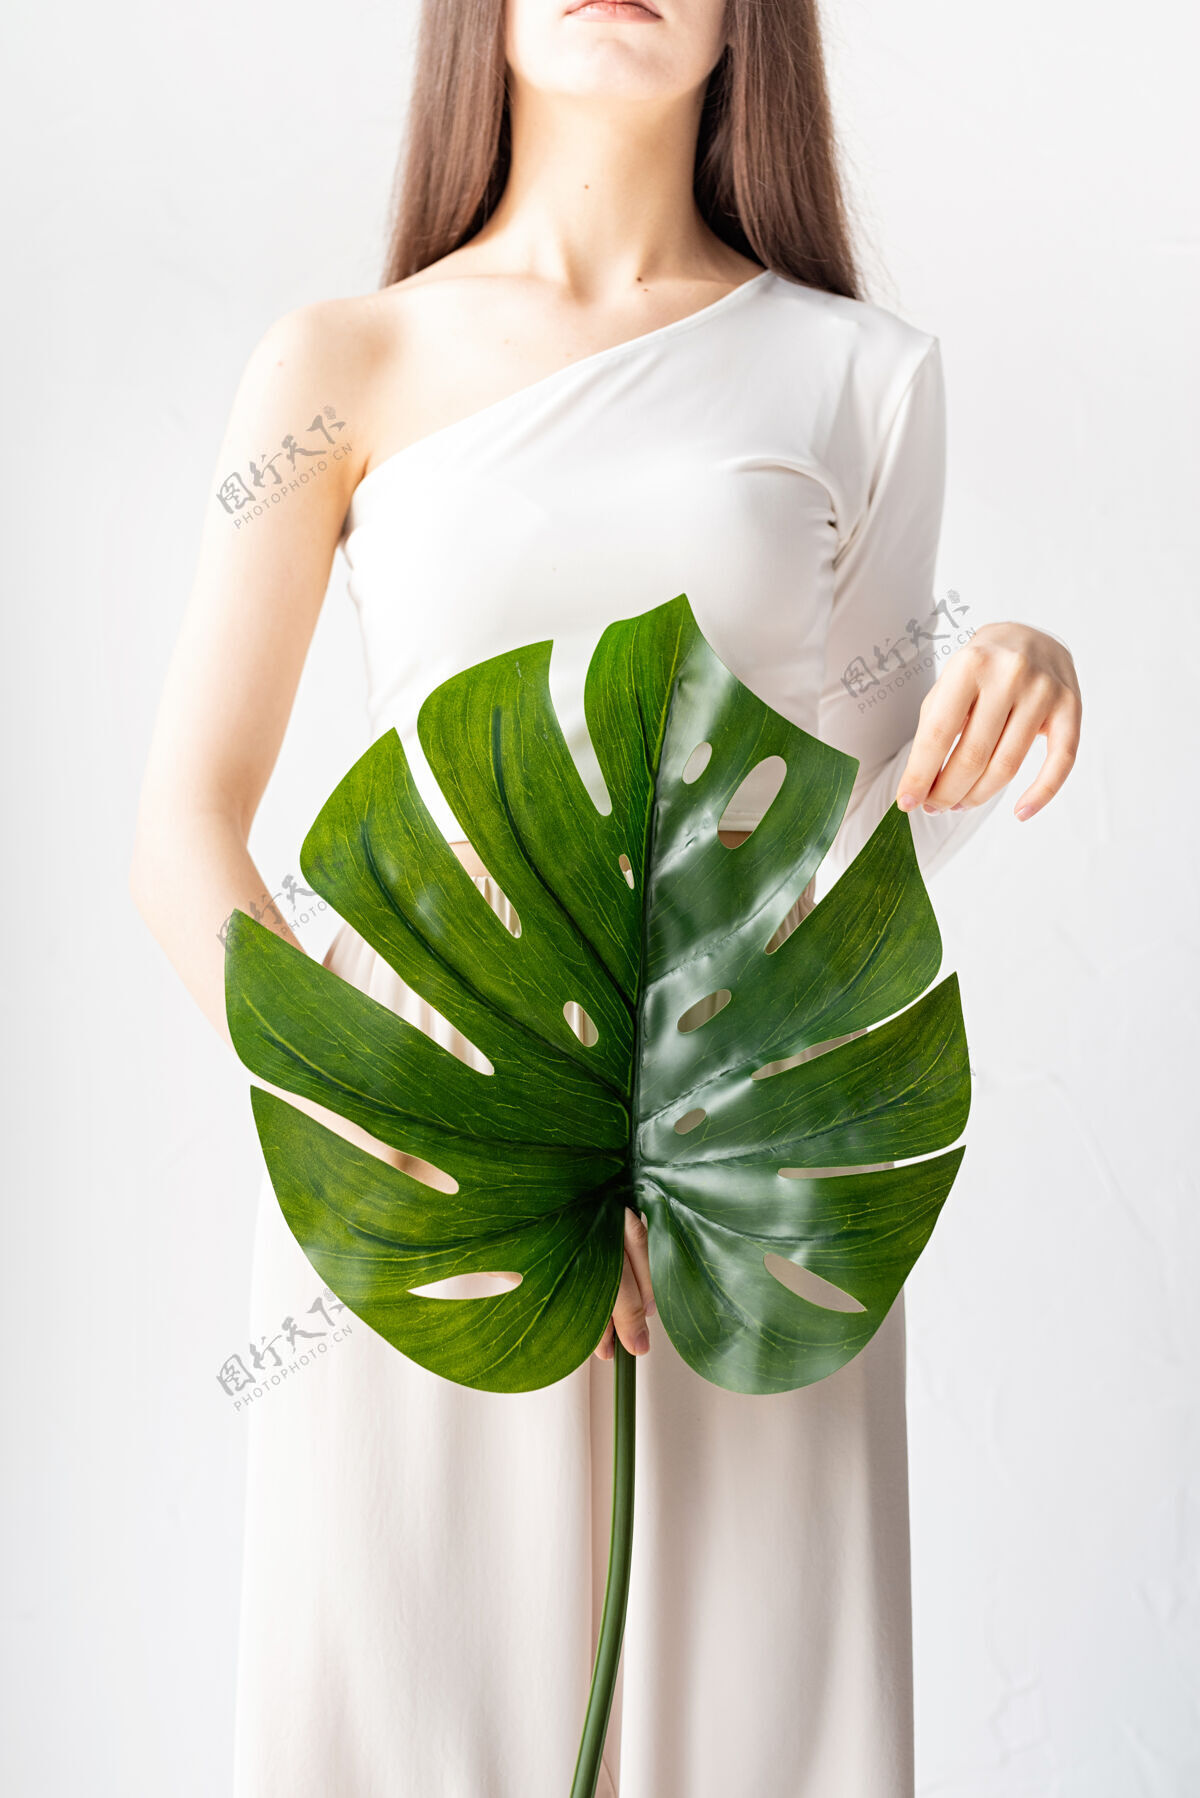 叶子水疗和美容自我护理和皮肤护理一个穿着舒适衣服 手持绿叶的快乐美女怪物女孩女性